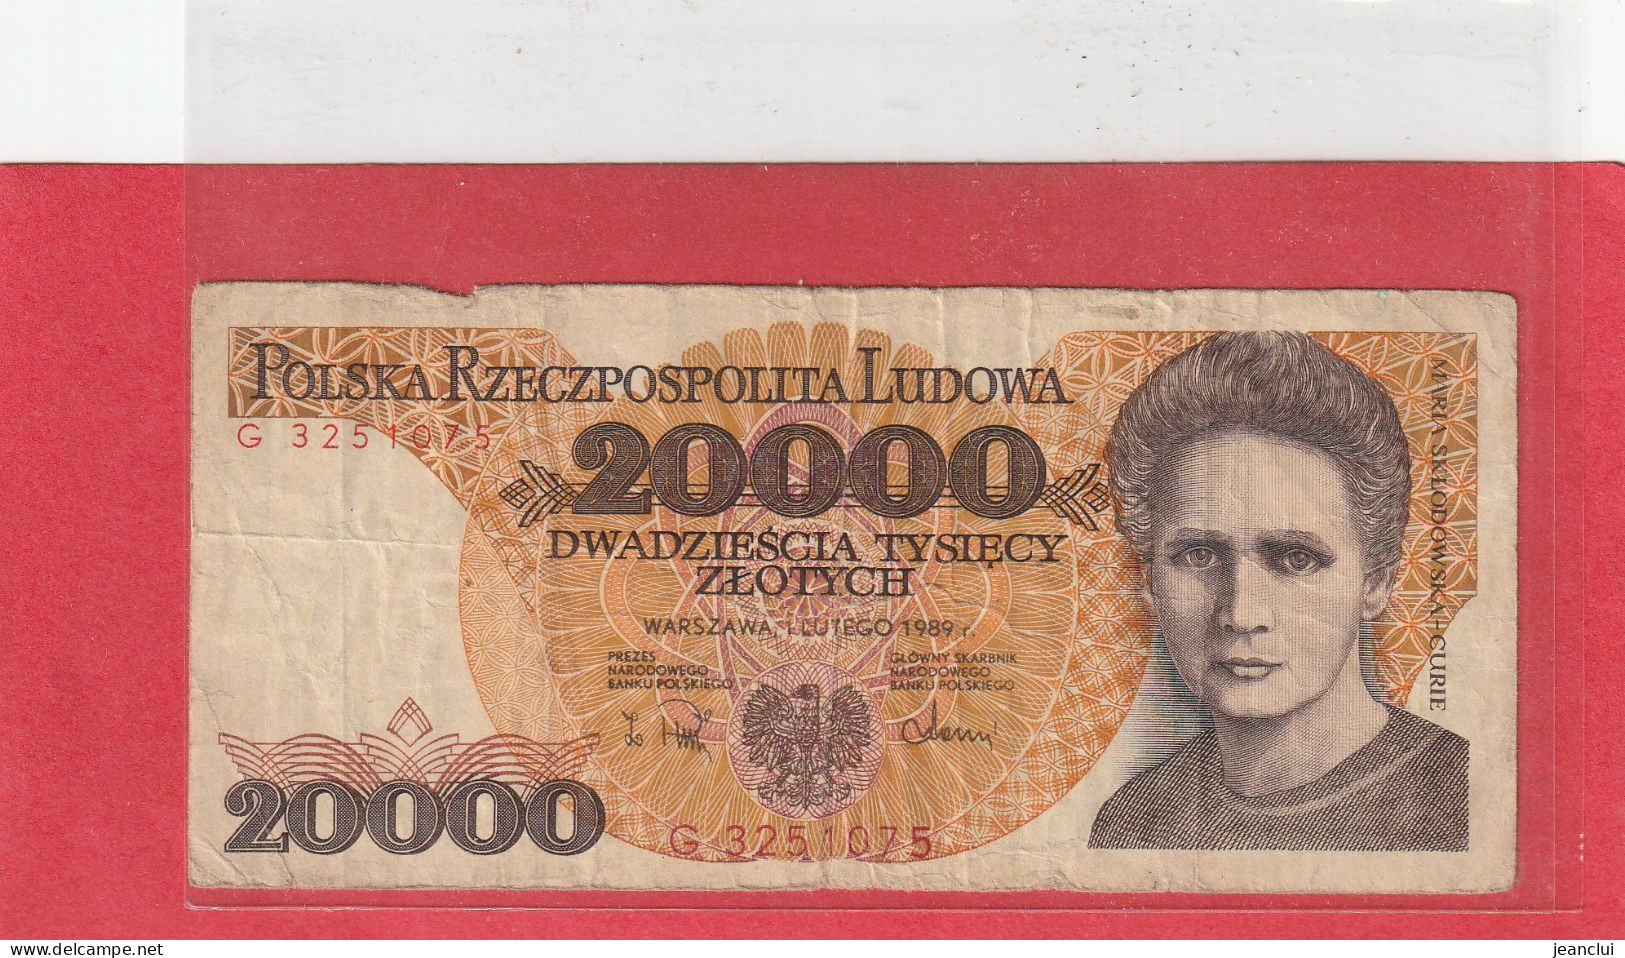 NARODOWY BANK POLSKI . 20.000 ZLOTYCH .  MARIA SKLODOWSKA-CURIE . 1-2-1989 .  N° G 3251075 . 2 SCANNES . BILLET USITE - Polonia